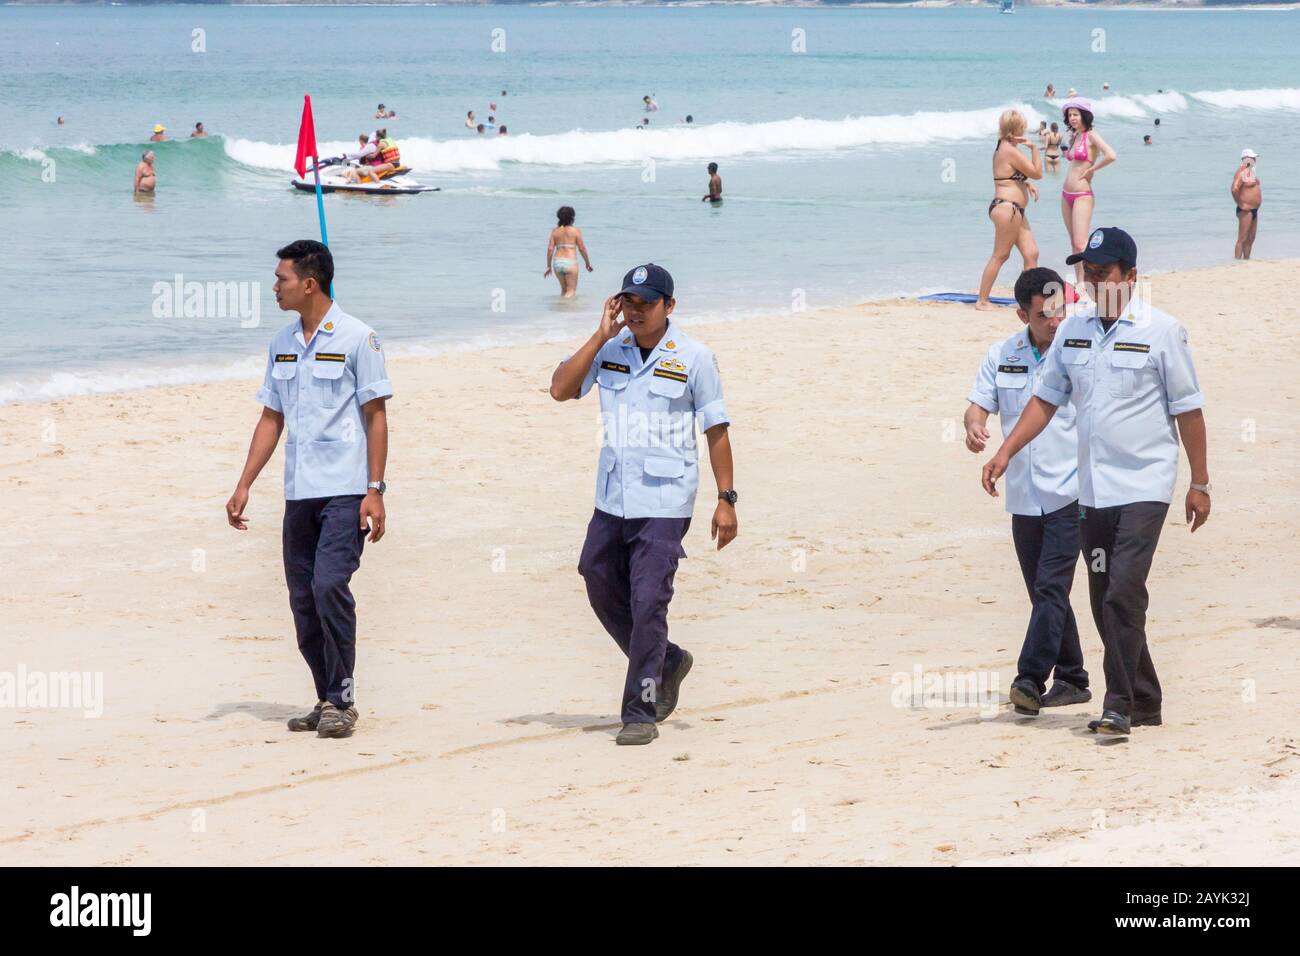 Patong, Phuket, Thailand - 11. November 2017: Beamte der örtlichen Behörden patrouillieren am Strand. Sie setzen lokale Vorschriften um. Stockfoto